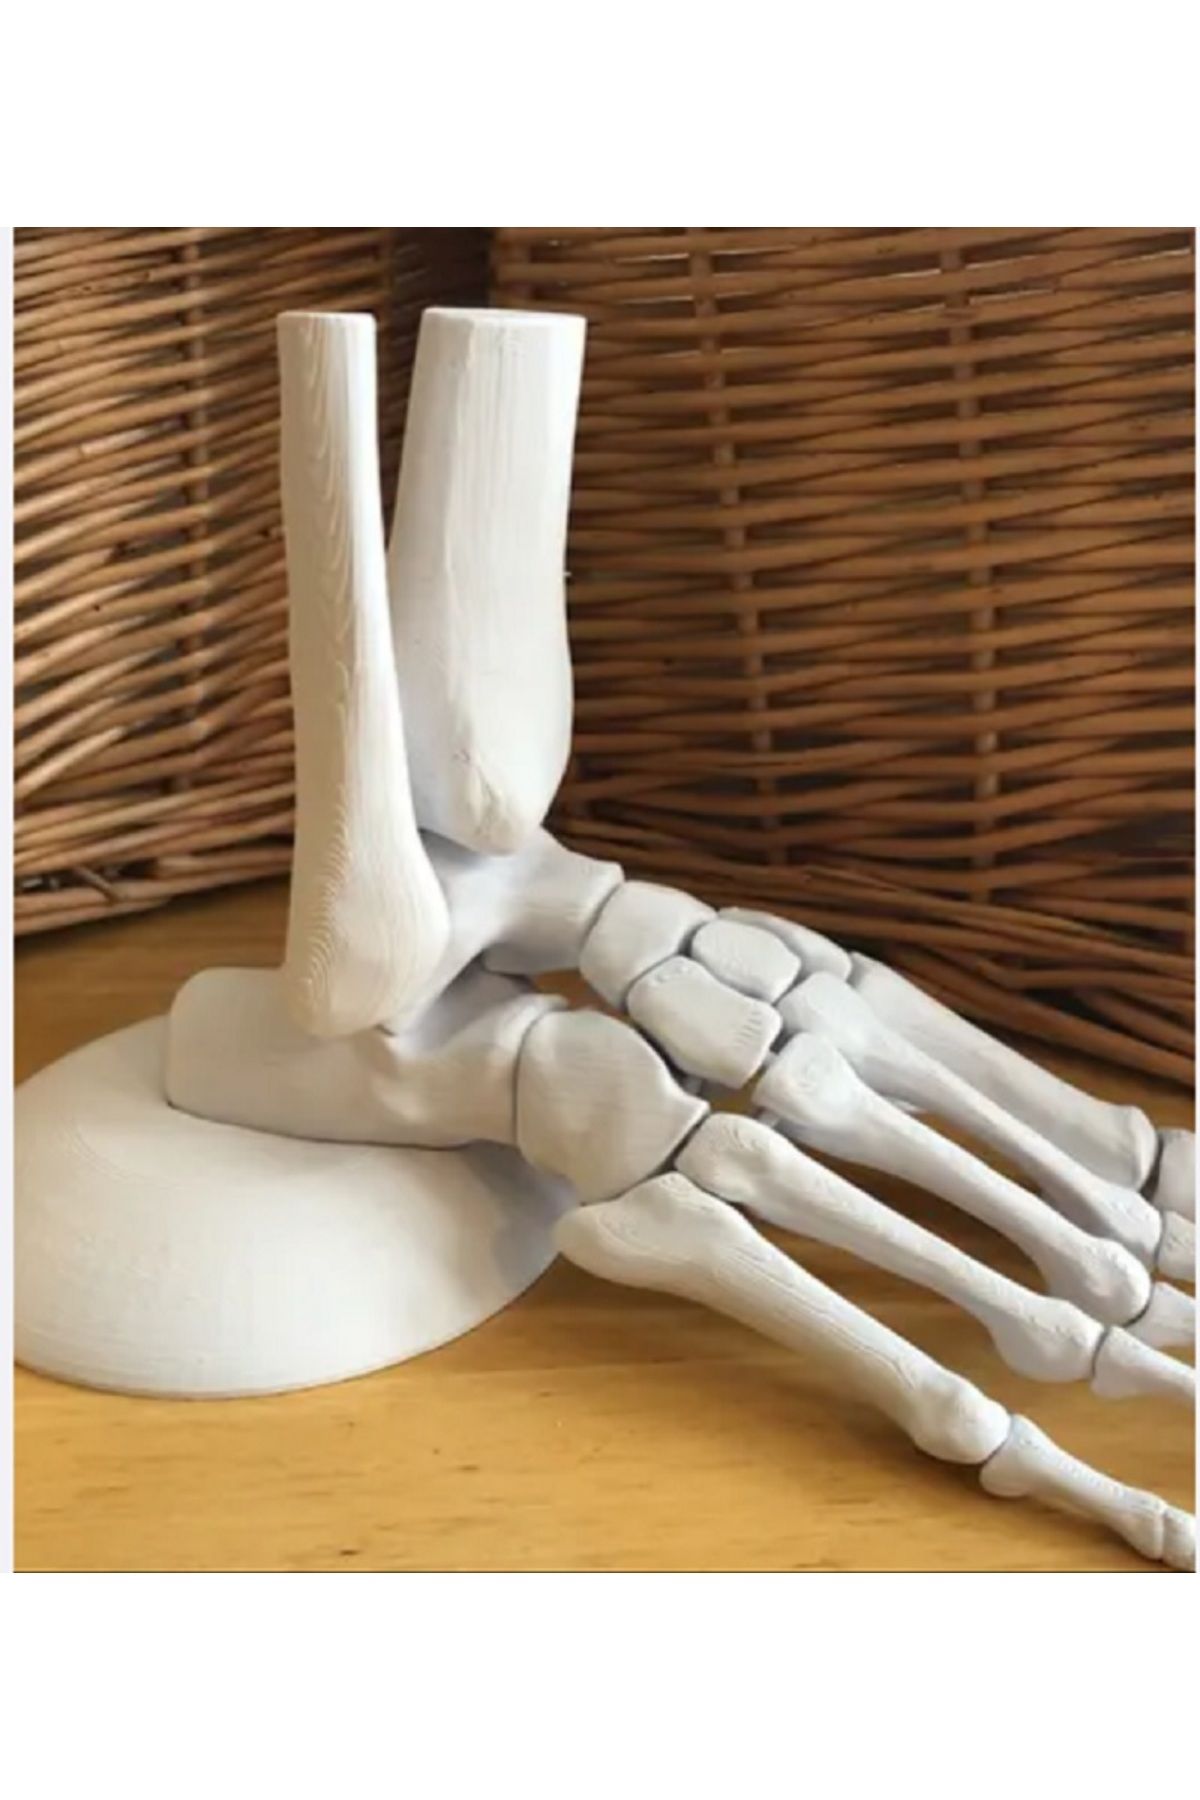 PODOLYA anatomik olarak doğru insan ayağı modeli